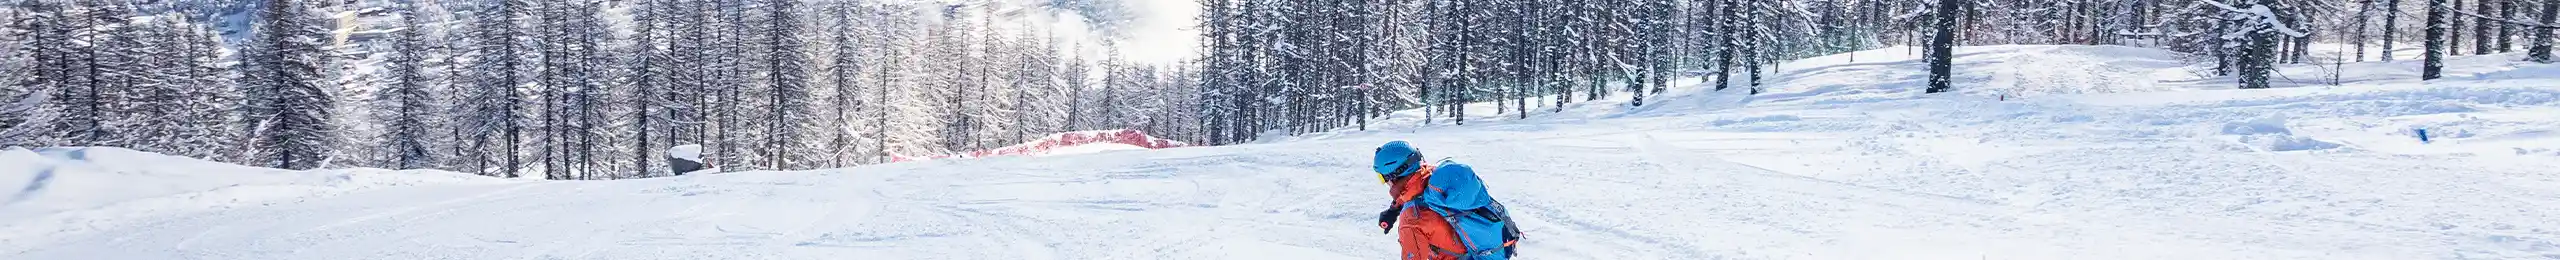 Une personne qui Dévale une piste de ski